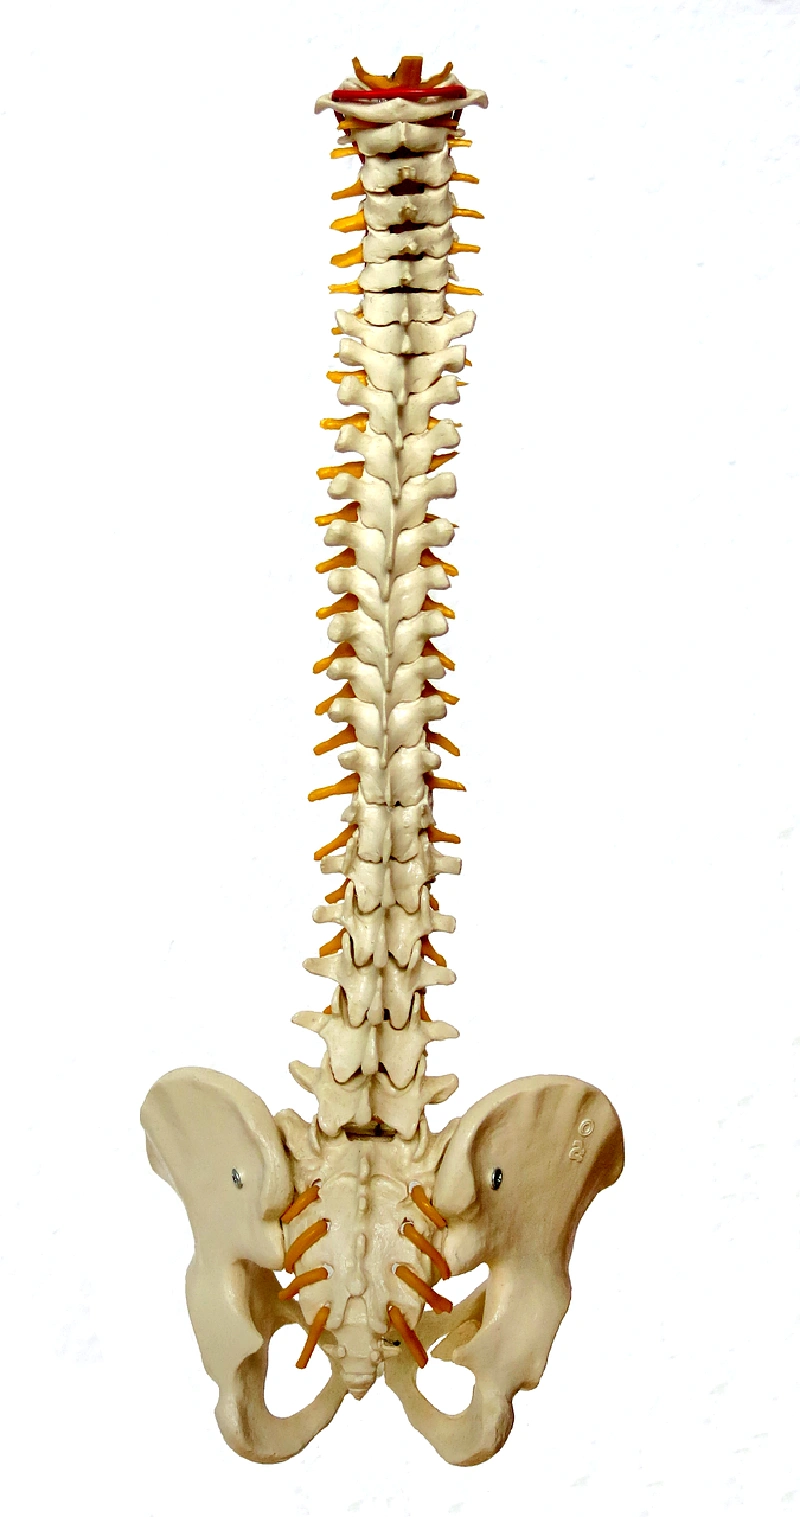 척추분쇄압박골절-원인-골다공증